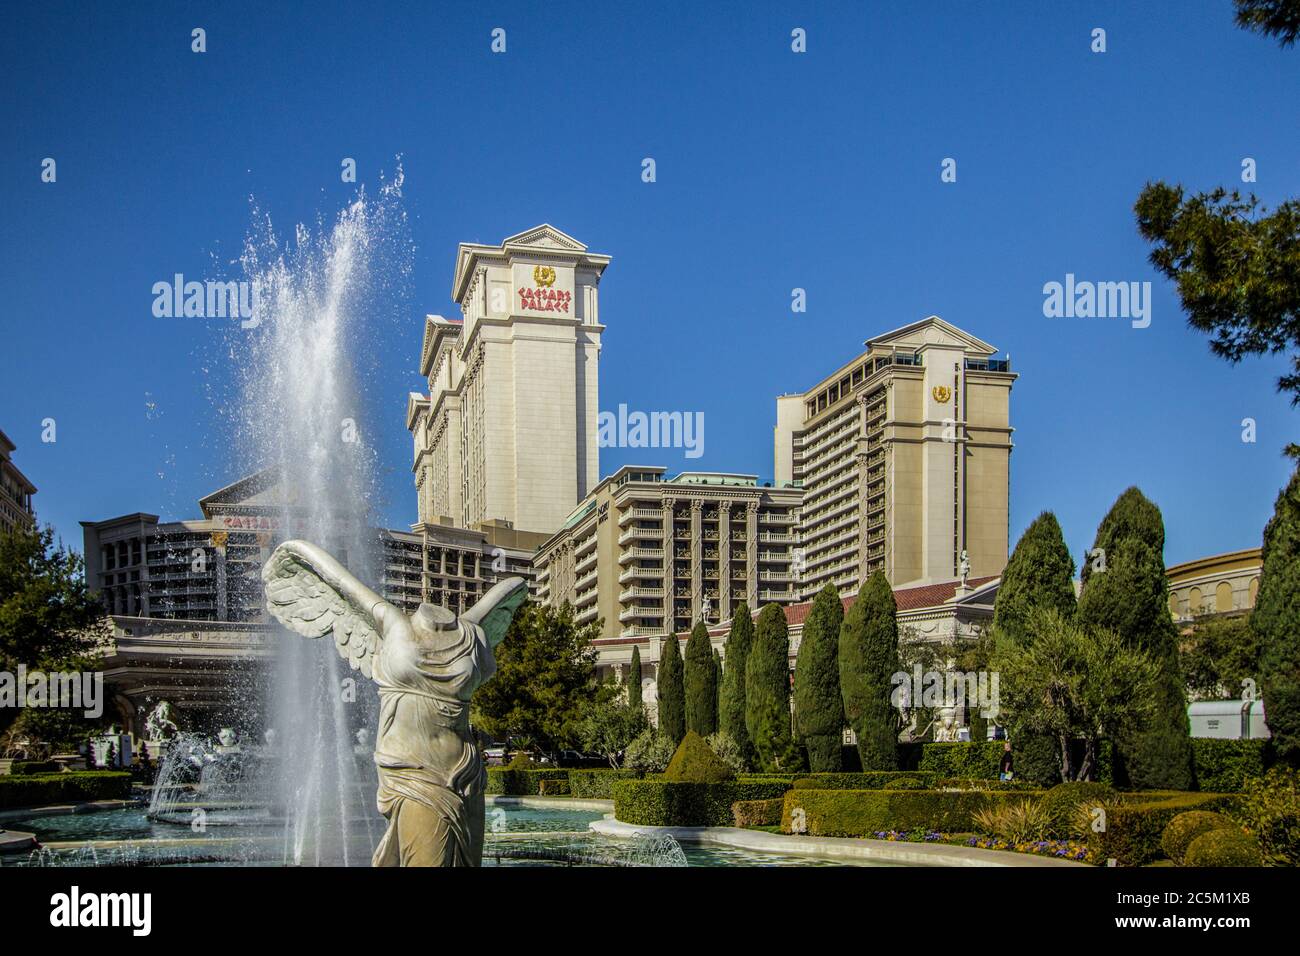 Las Vegas, Nevada, USA - 20 febbraio 2020: L'esterno del casinò e resort Caesars Palace con statua e fontane. Foto Stock